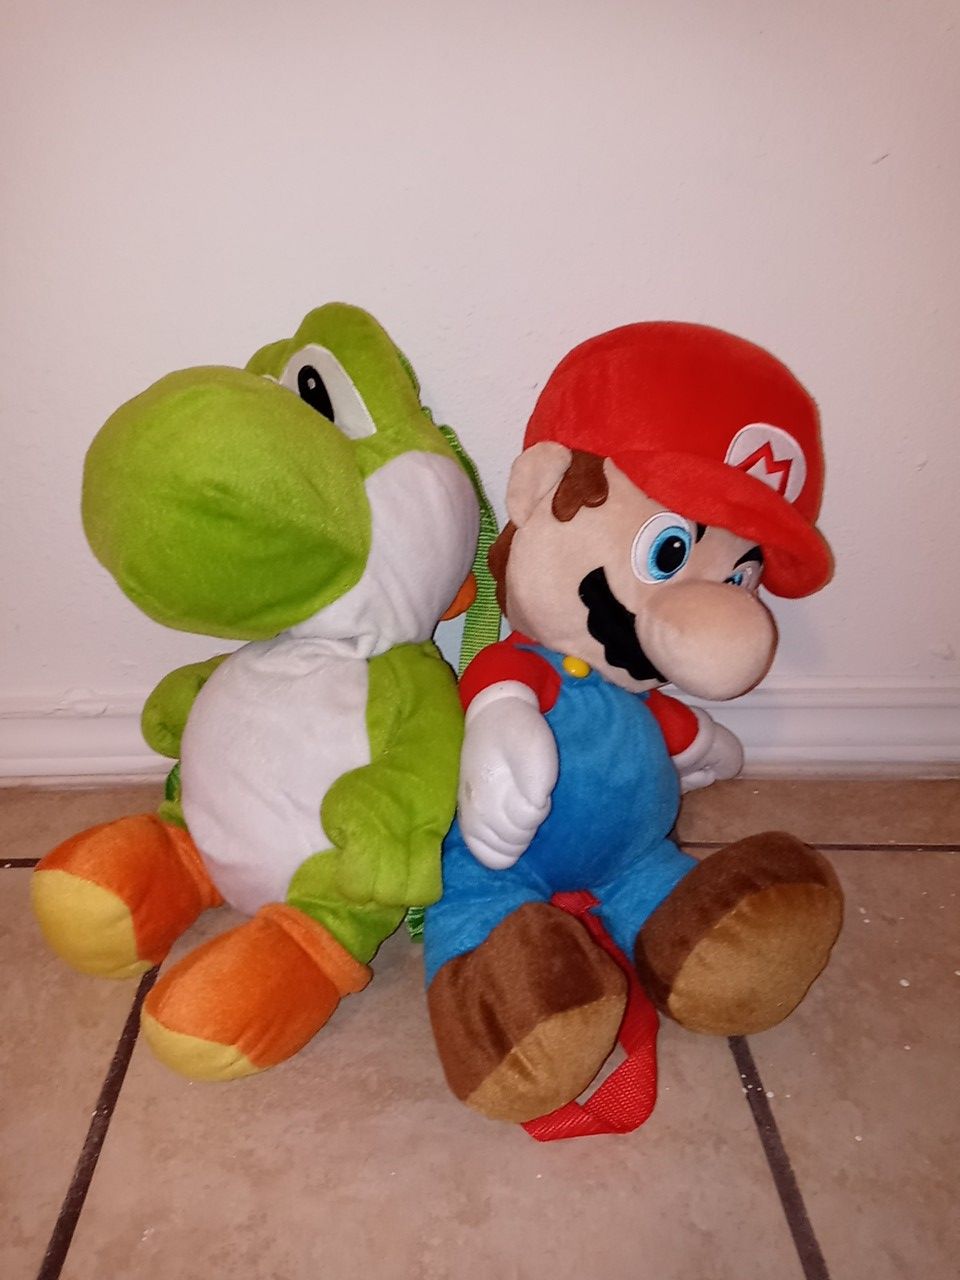 A Mario and Luigi bag